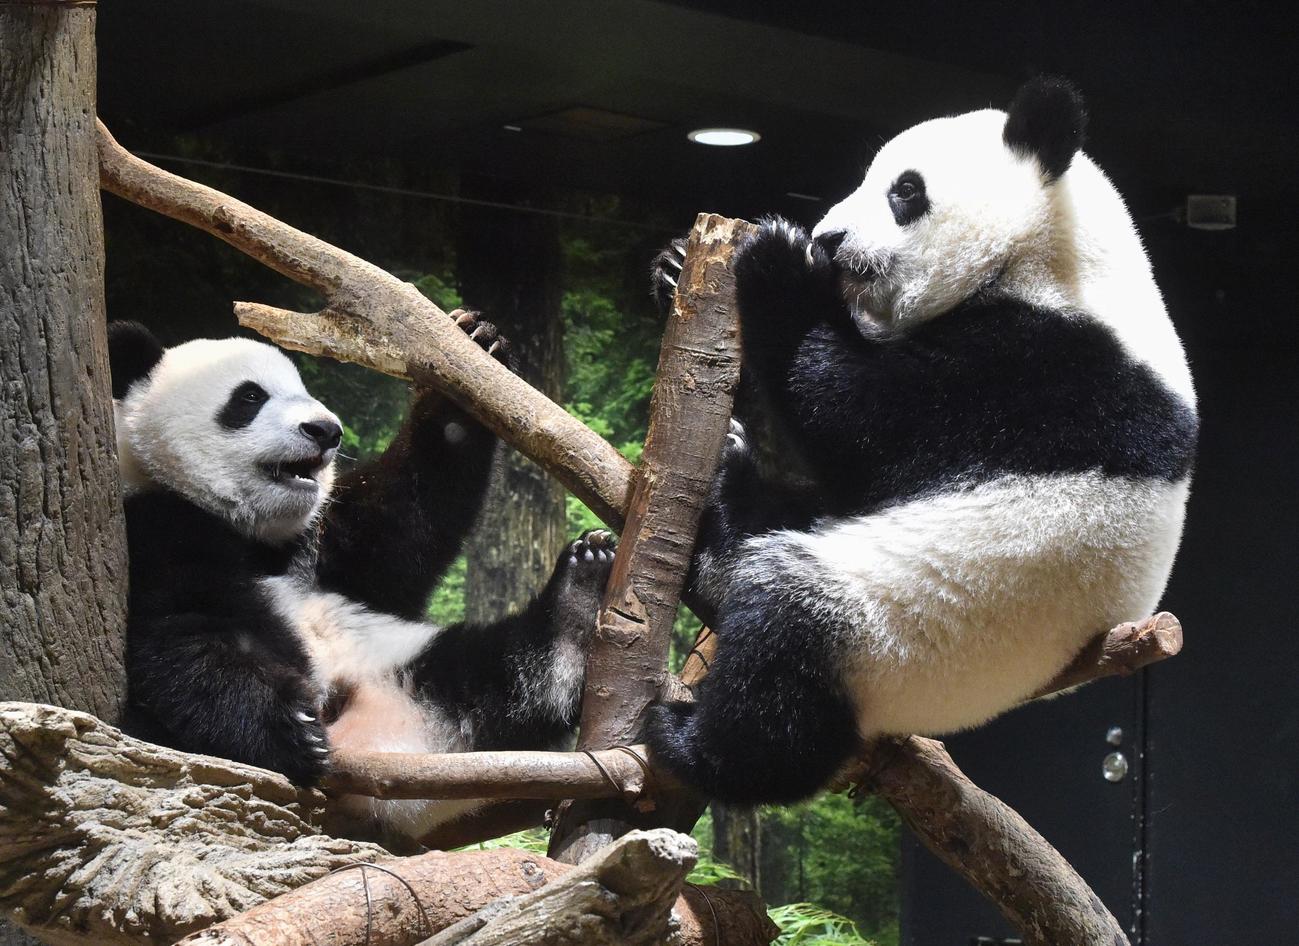 仲良く遊ぶ上野動物園の双子のジャイアントパンダ。左が雄シャオシャオ、右が雌レイレイ。ともに397日齢。7月25日撮影（東京動物園協会提供）